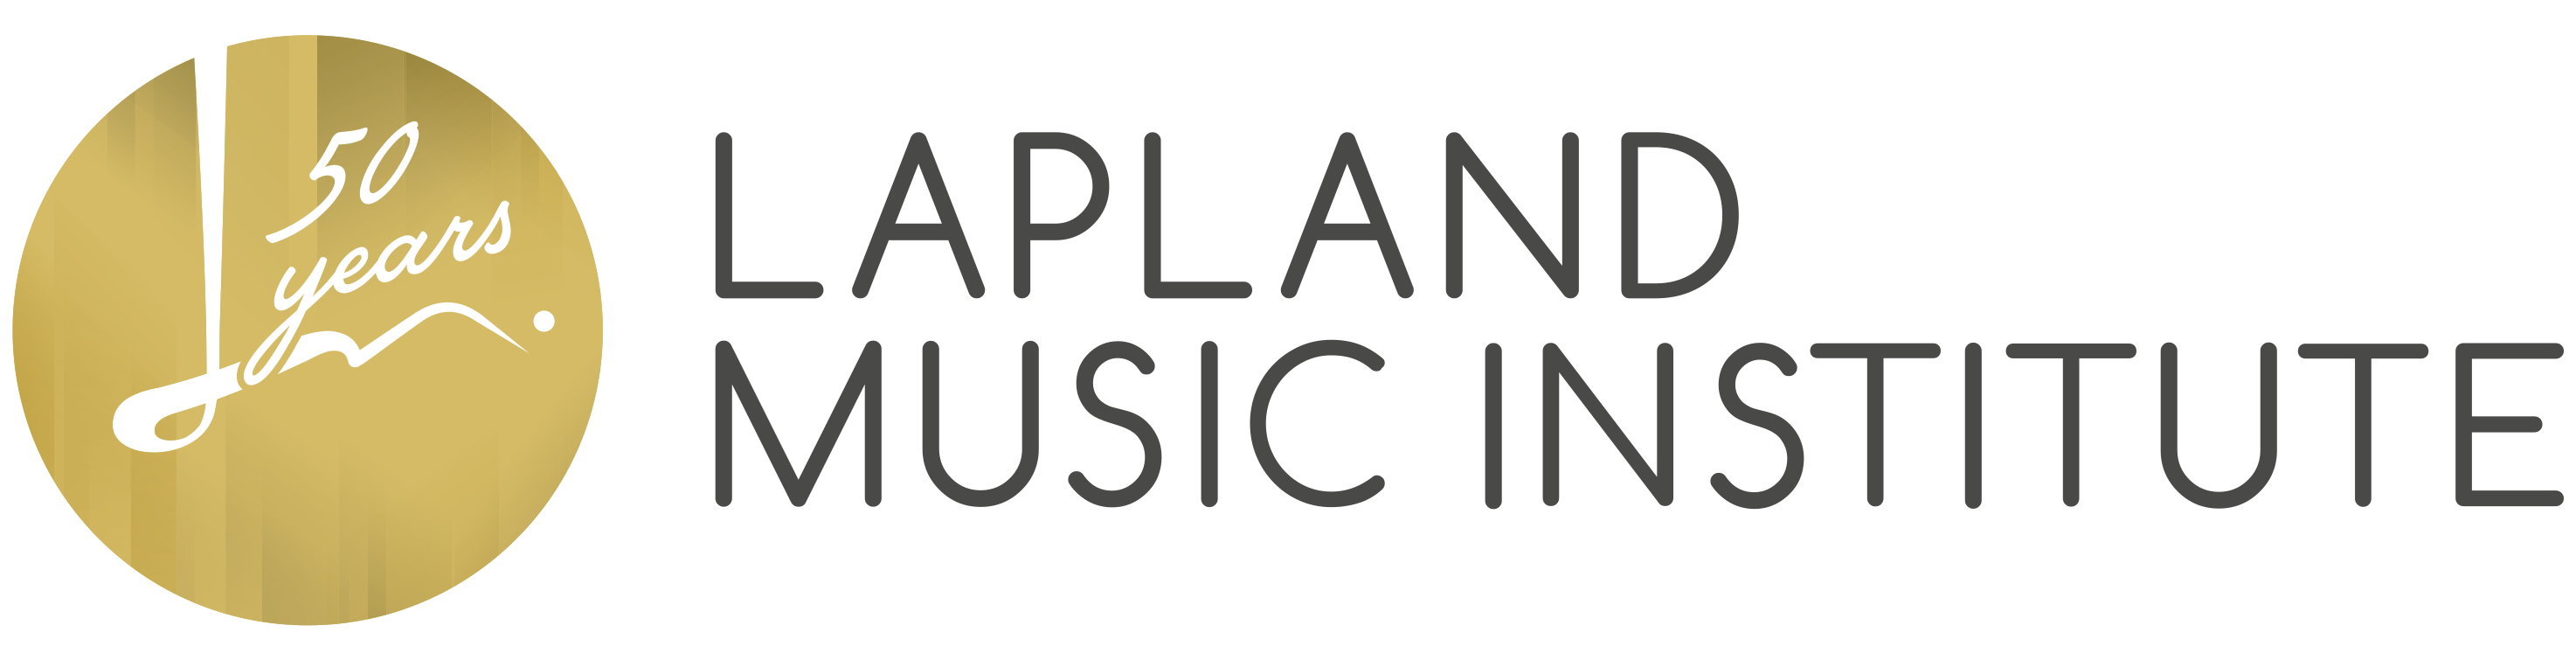 Lapland Music Institute logo